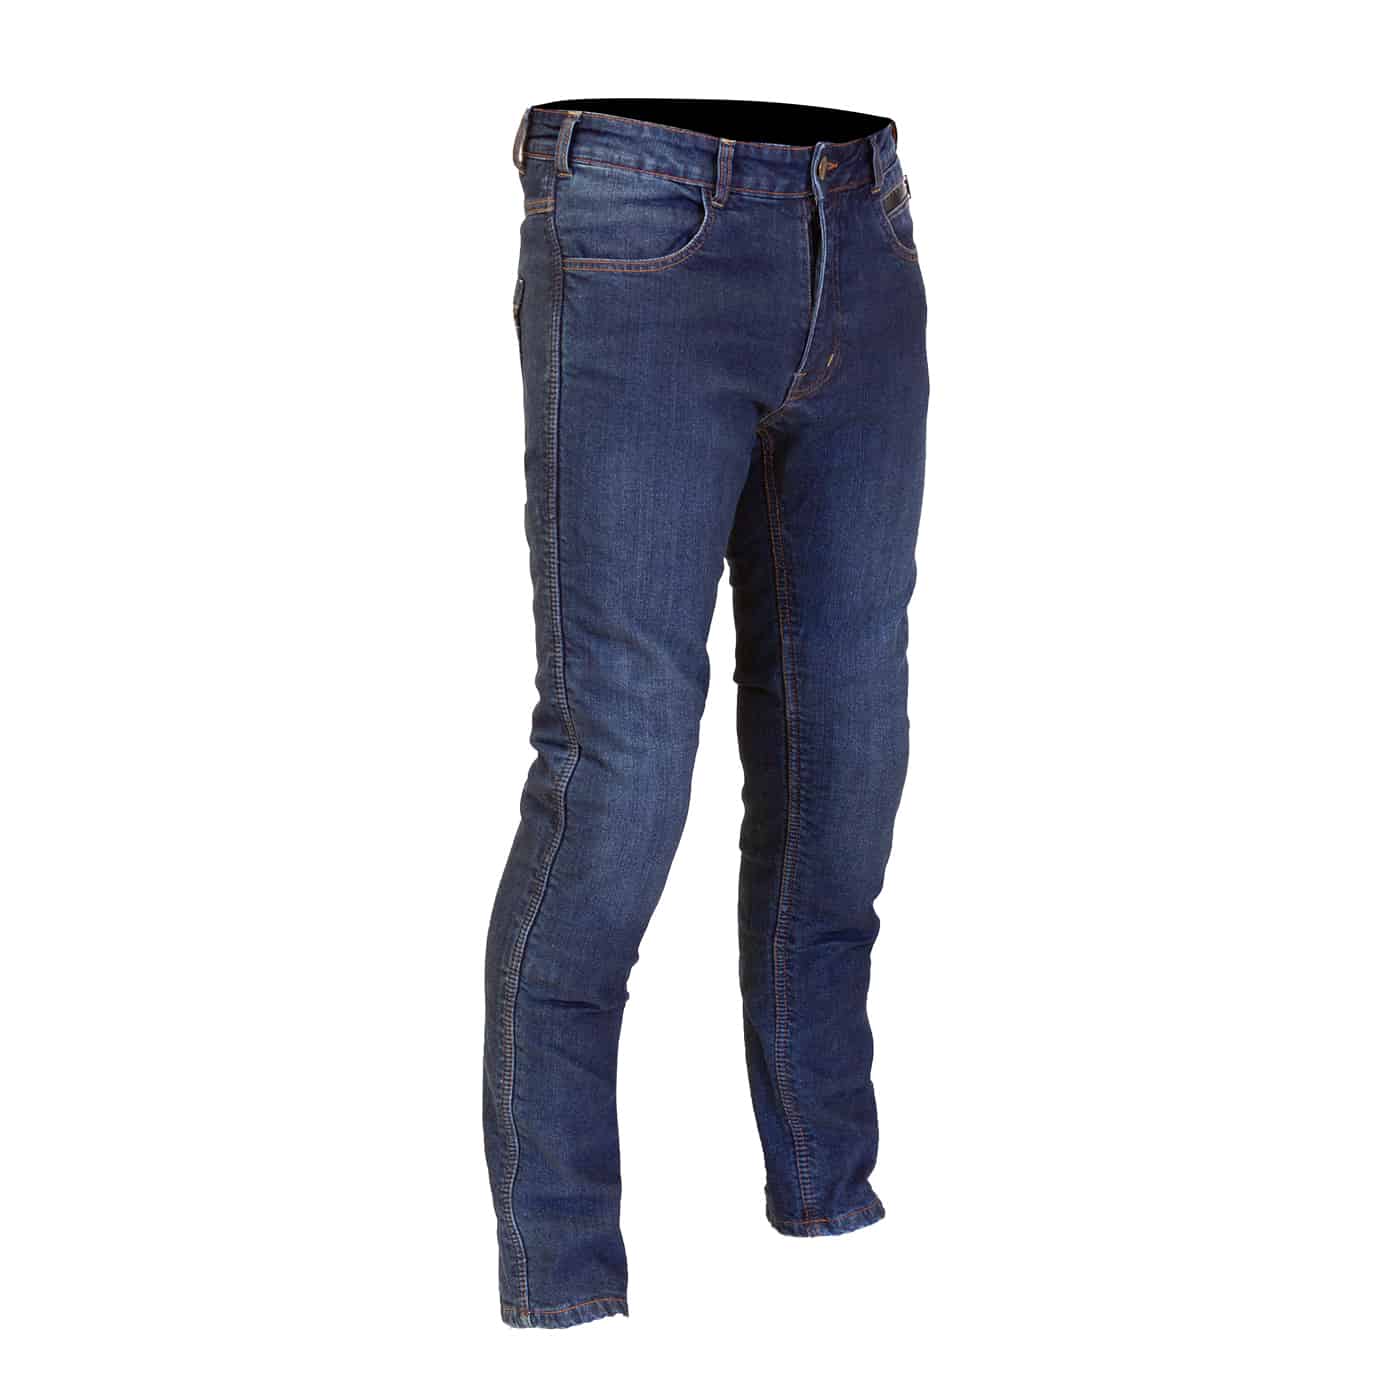 Waterproof Motorcycle Pants kevlar Reinforced Motorcycle Kevlar Jeans